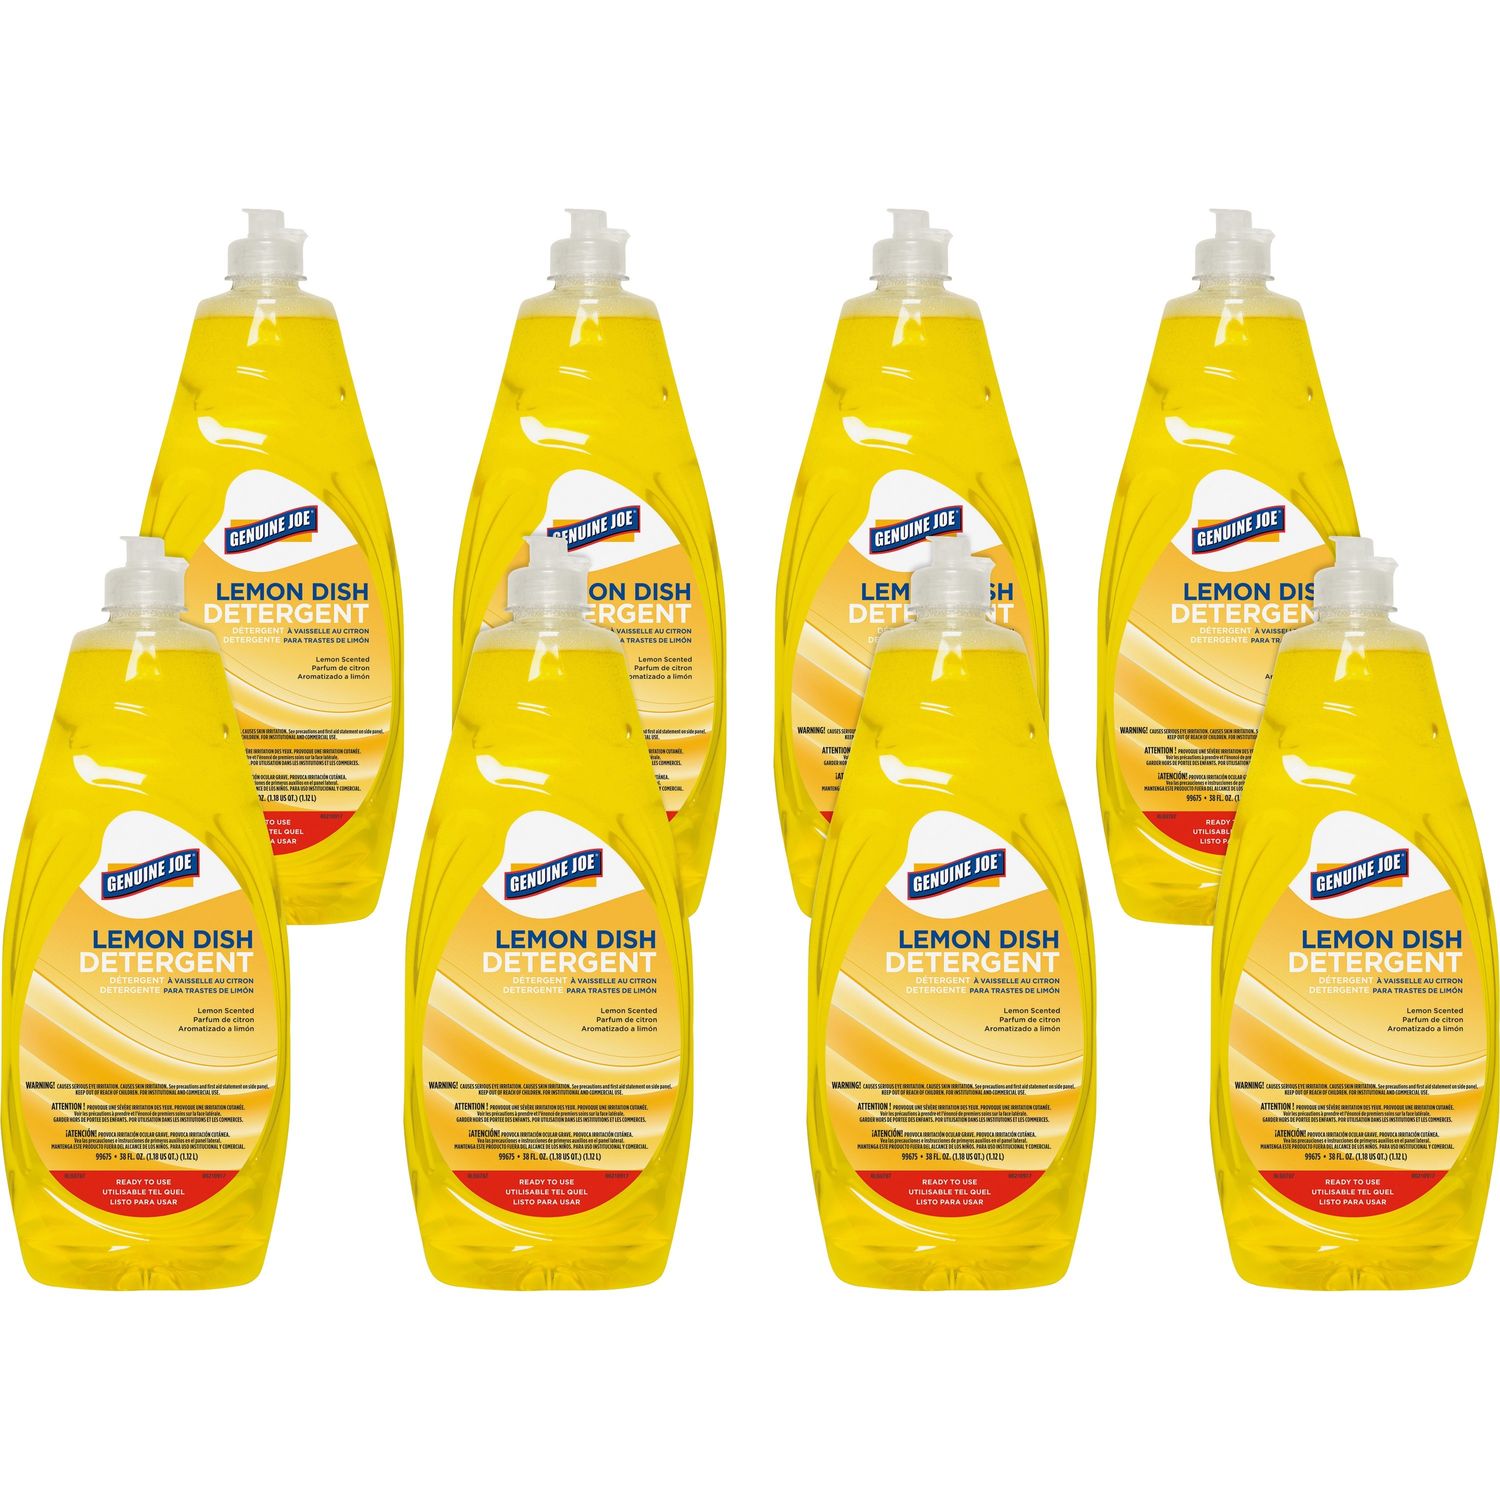 Lemon Dish Detergent Concentrate Liquid, 38 fl oz (1.2 quart), Lemon Scent, 8 / Carton, Yellow